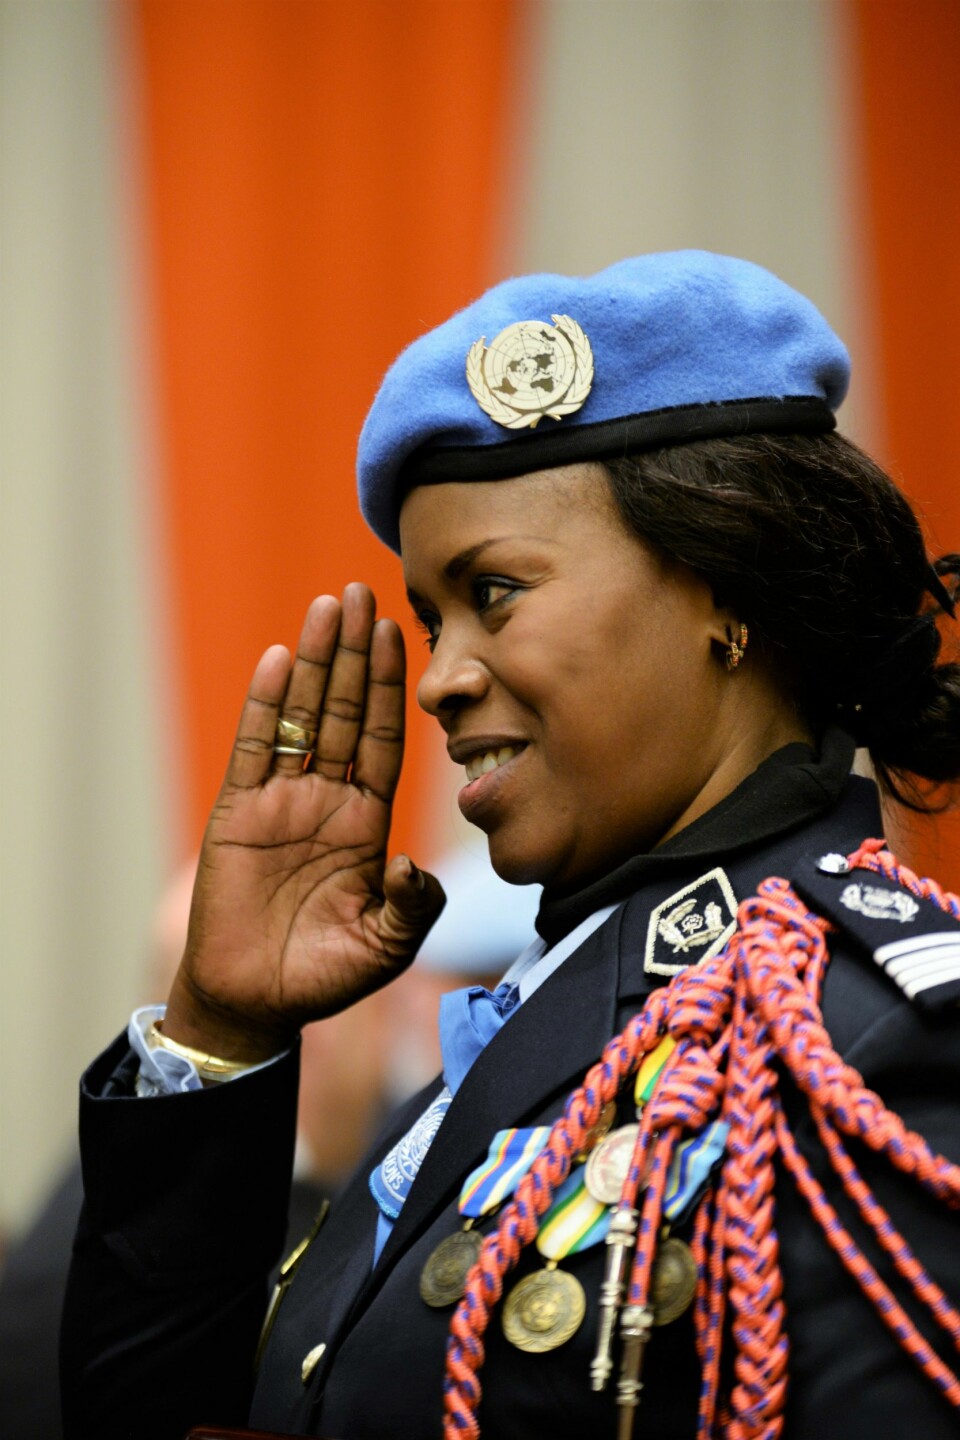 PRISVINNER: Seynabou Diouf fra Senegal er kåret til årets kvinnelige FN-politi for sitt arbeid i Kongo. Her hilser hun sine politikollegaer under prisutdelingen.